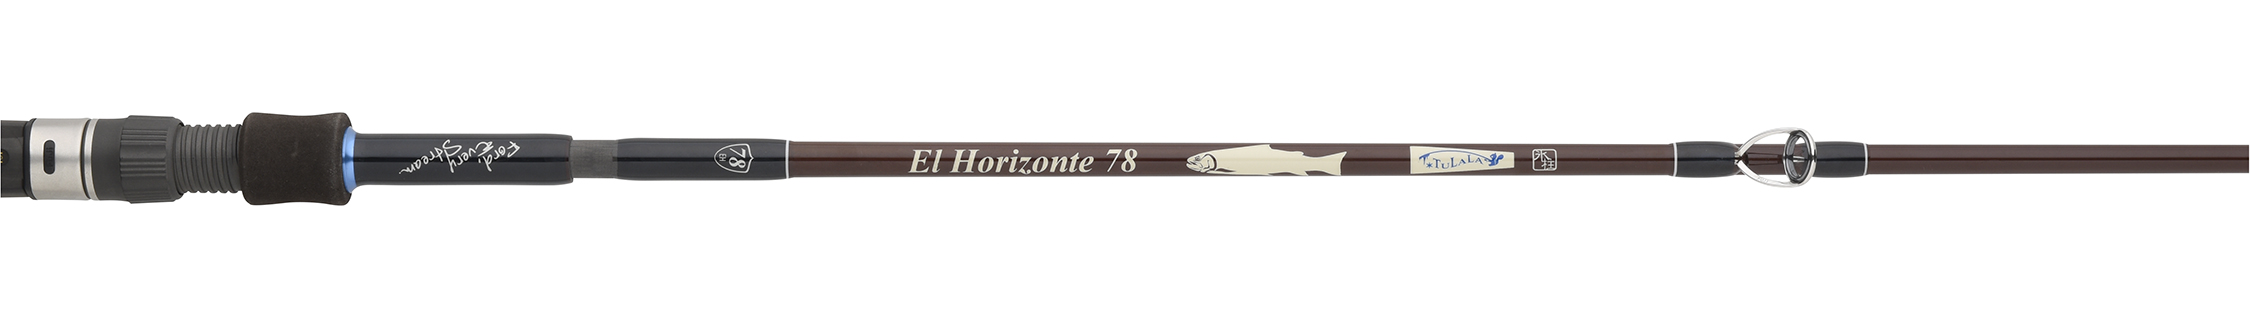 El Horizonte 78 | Logo